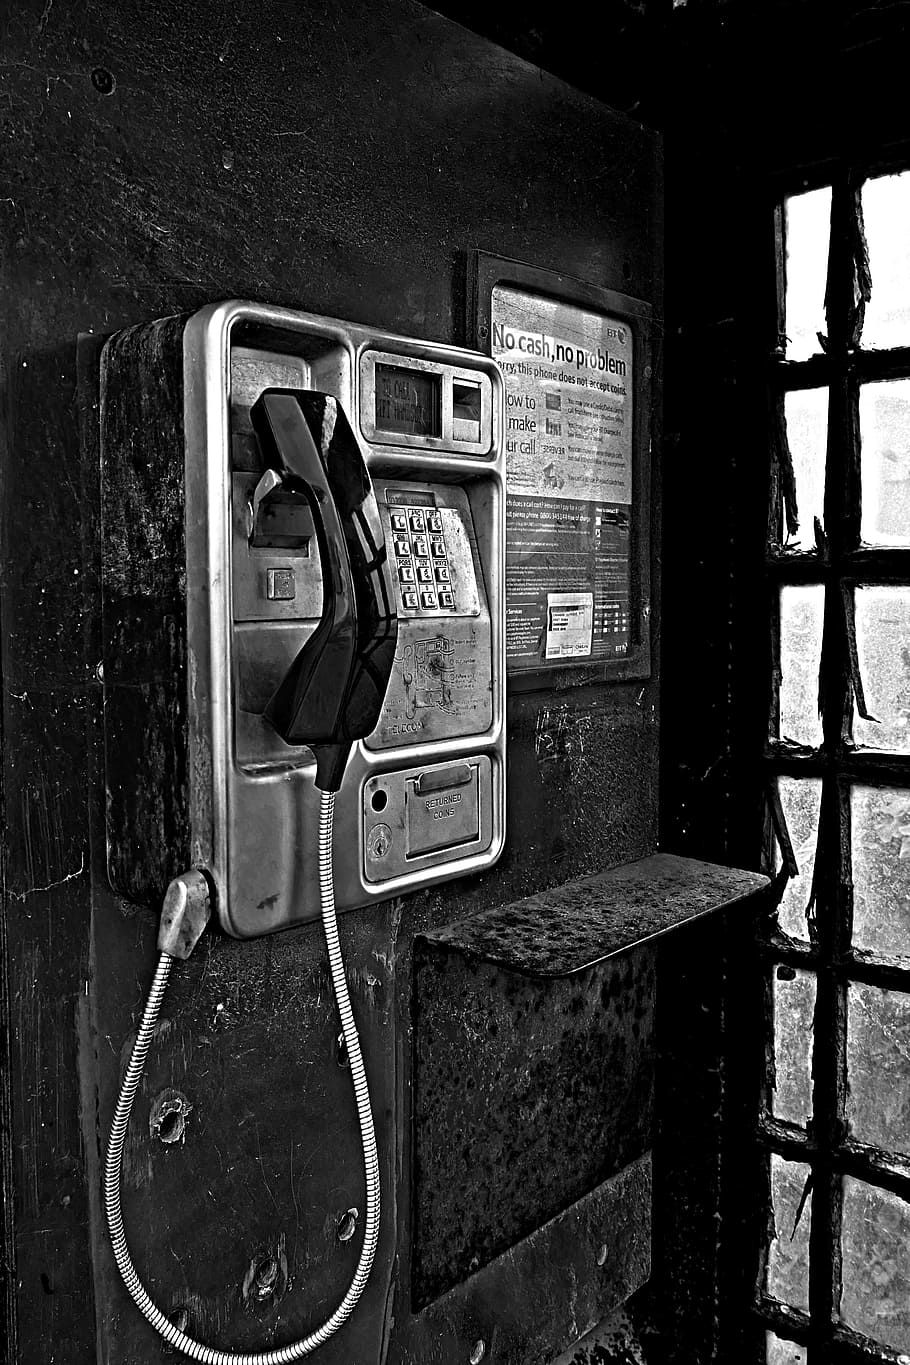 teléfono, cabina telefónica, puerta, seguridad, humano, antiguo, nostálgico, efectivo, teléfono celular alternativo, londres